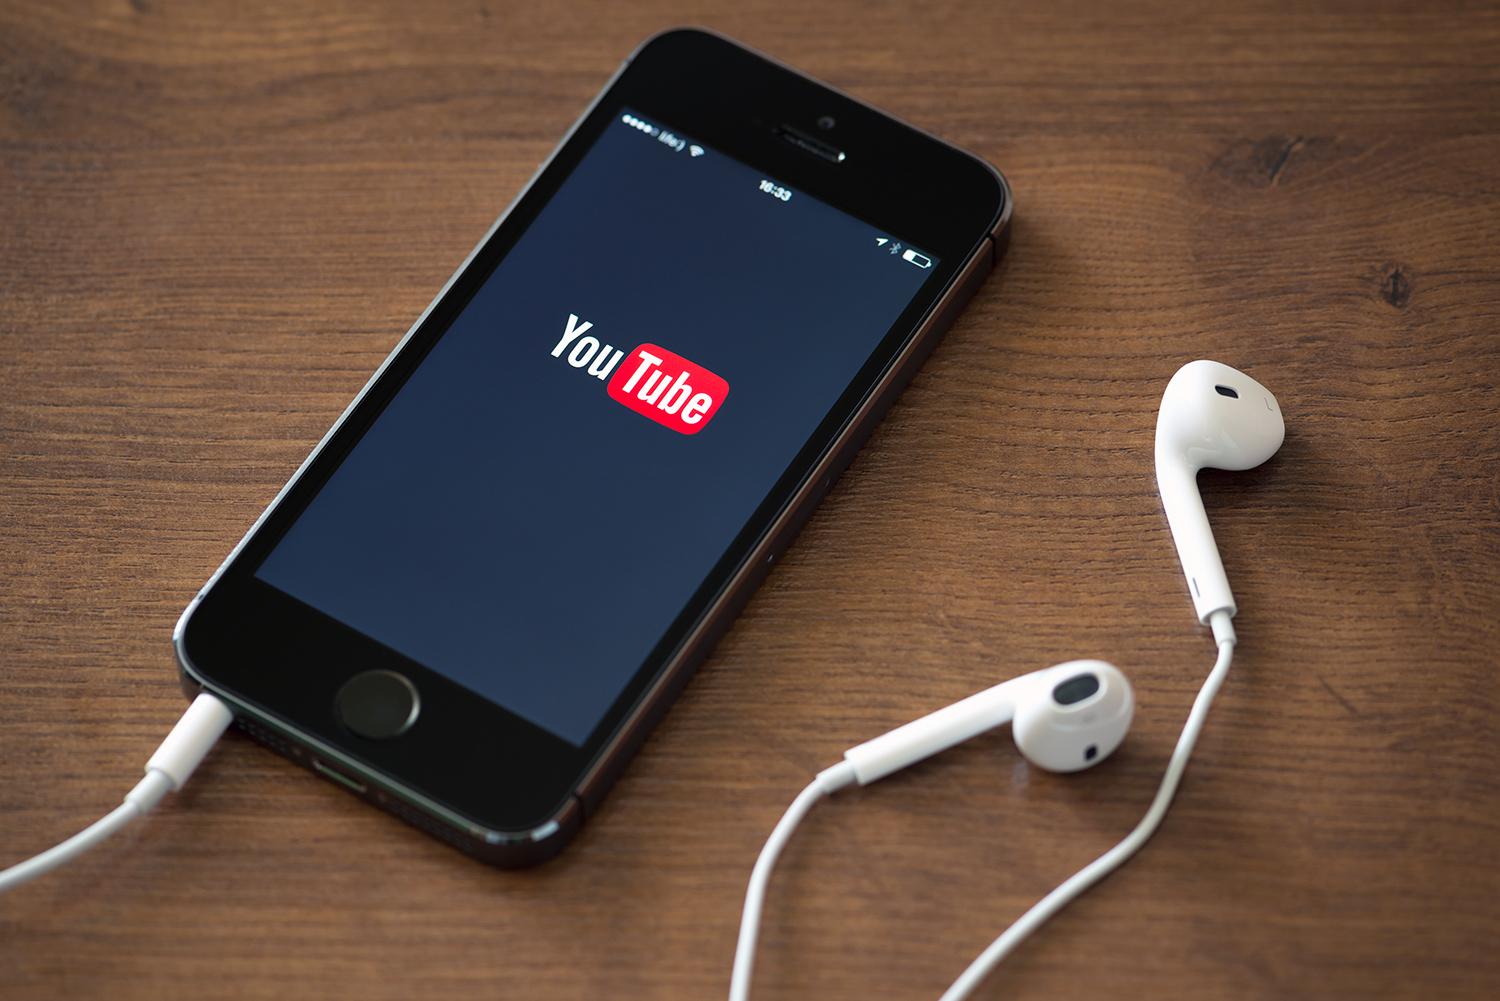 ميزة حصرية من يوتيوب لمشاهدة الفيديوهات بصورة أسهل!